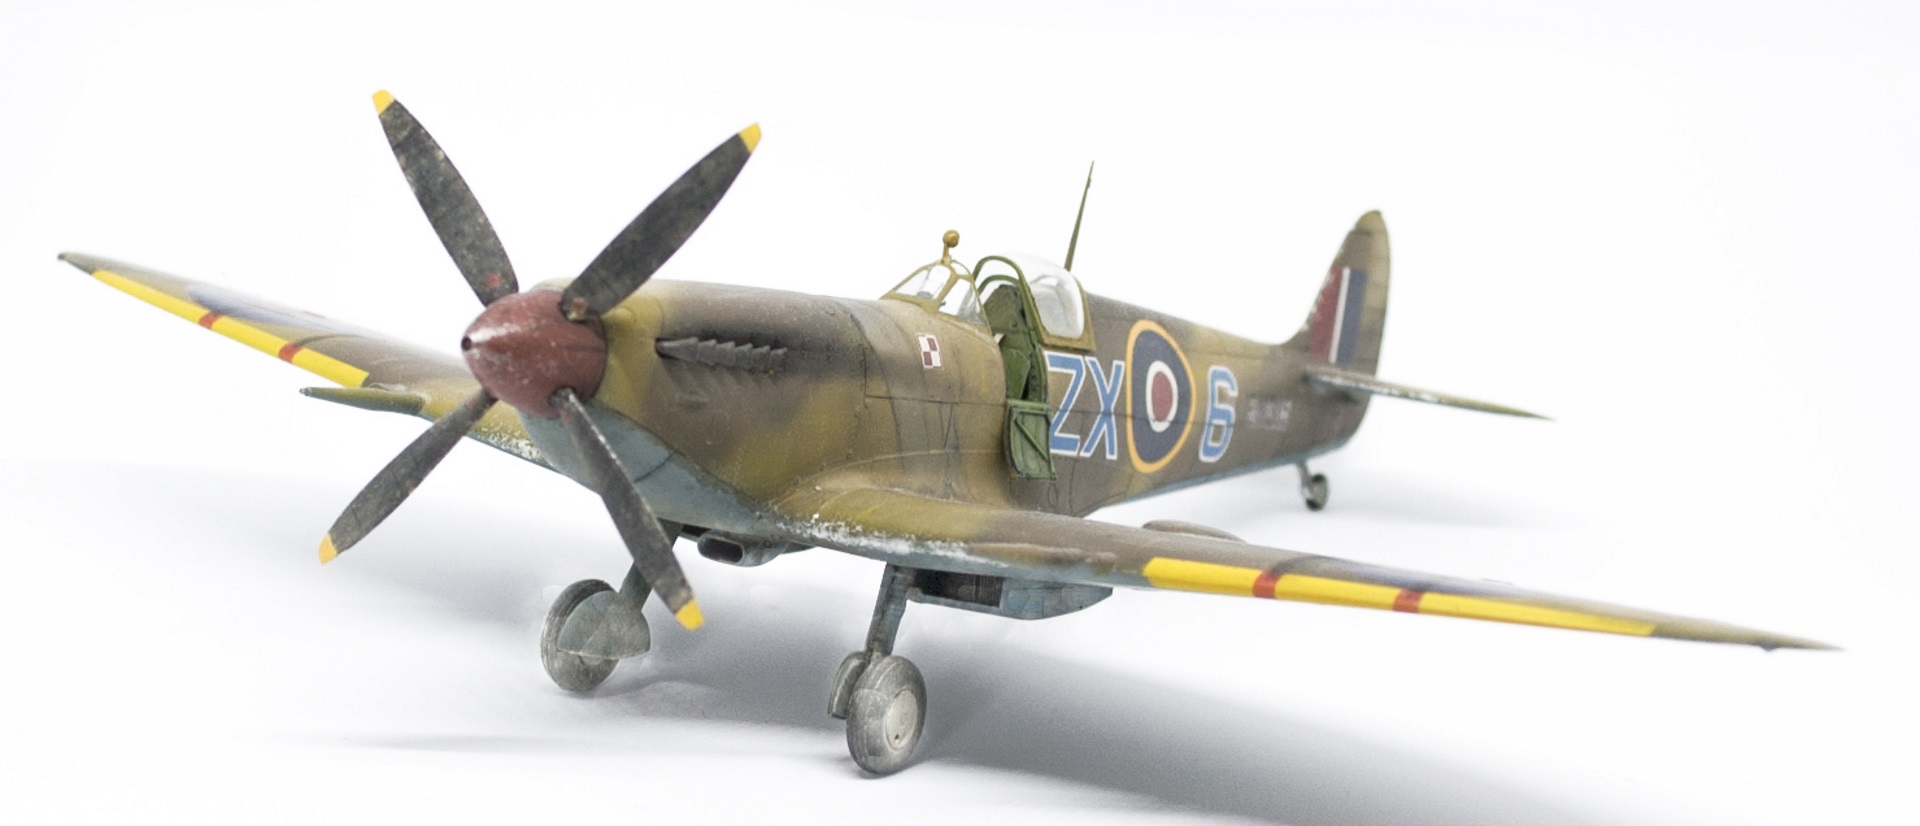 Spitfire Mk IXc "early" - Eduard 1/48 - Cirque Skalski - Scénette FINIE 18041310232522113415666335